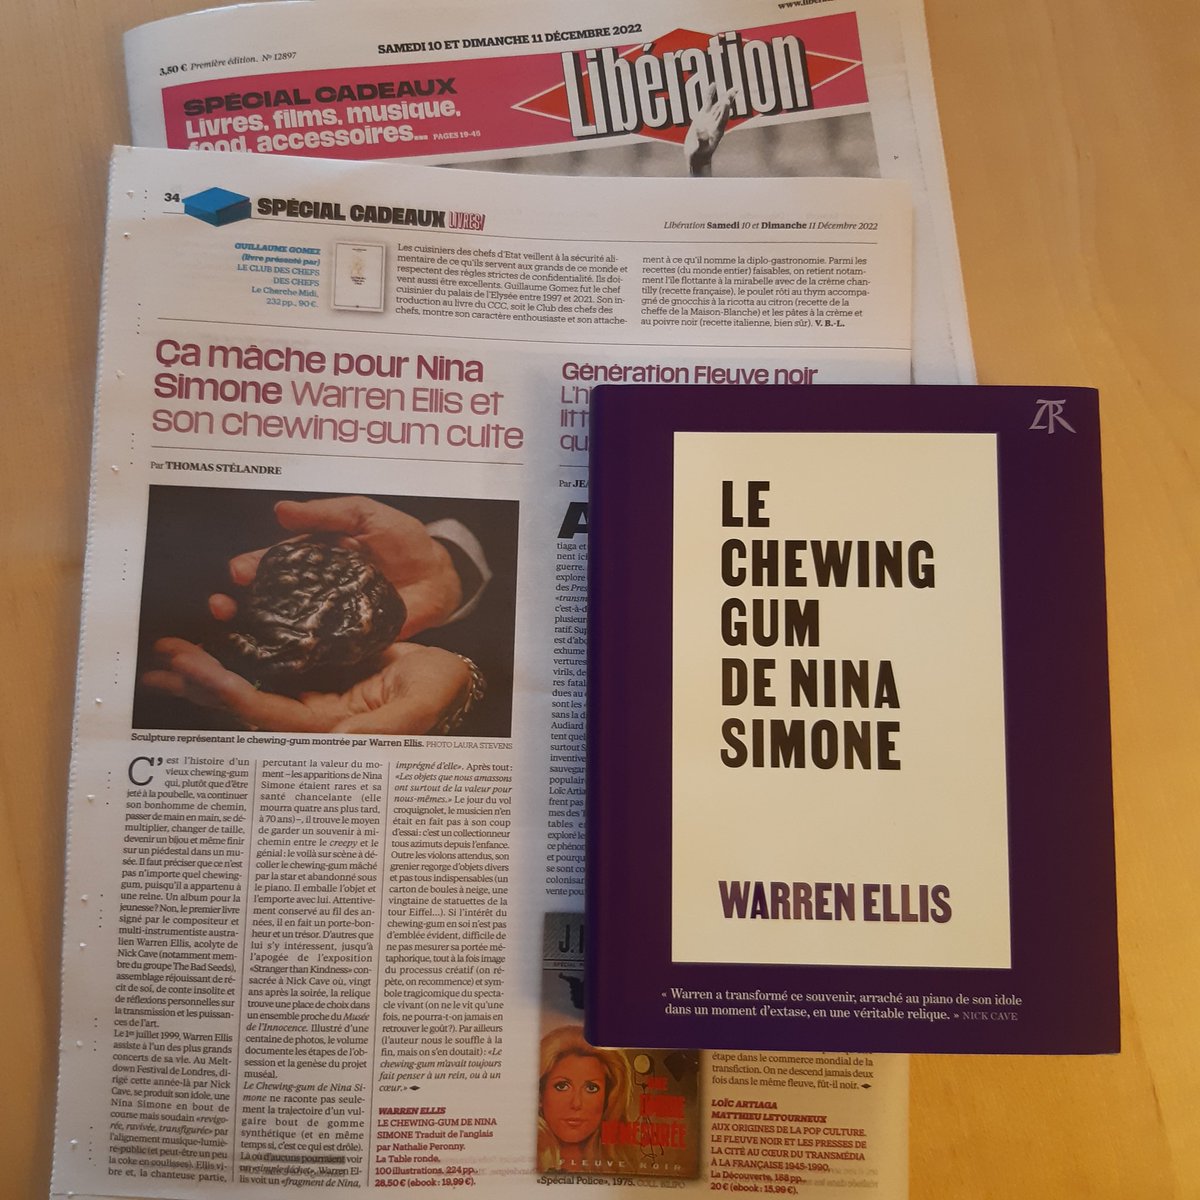 Le meilleur résumé du livre de @warrenellis13 , on le doit à @ThomasStelandre dans @libe aujourd'hui : 'Le Chewing-gum de Nina Simone ne raconte pas seulement la trajectoire d'un vulgaire bout de gomme synthétique (et en même temps si, c'est ce qui est drôle).' 🤩